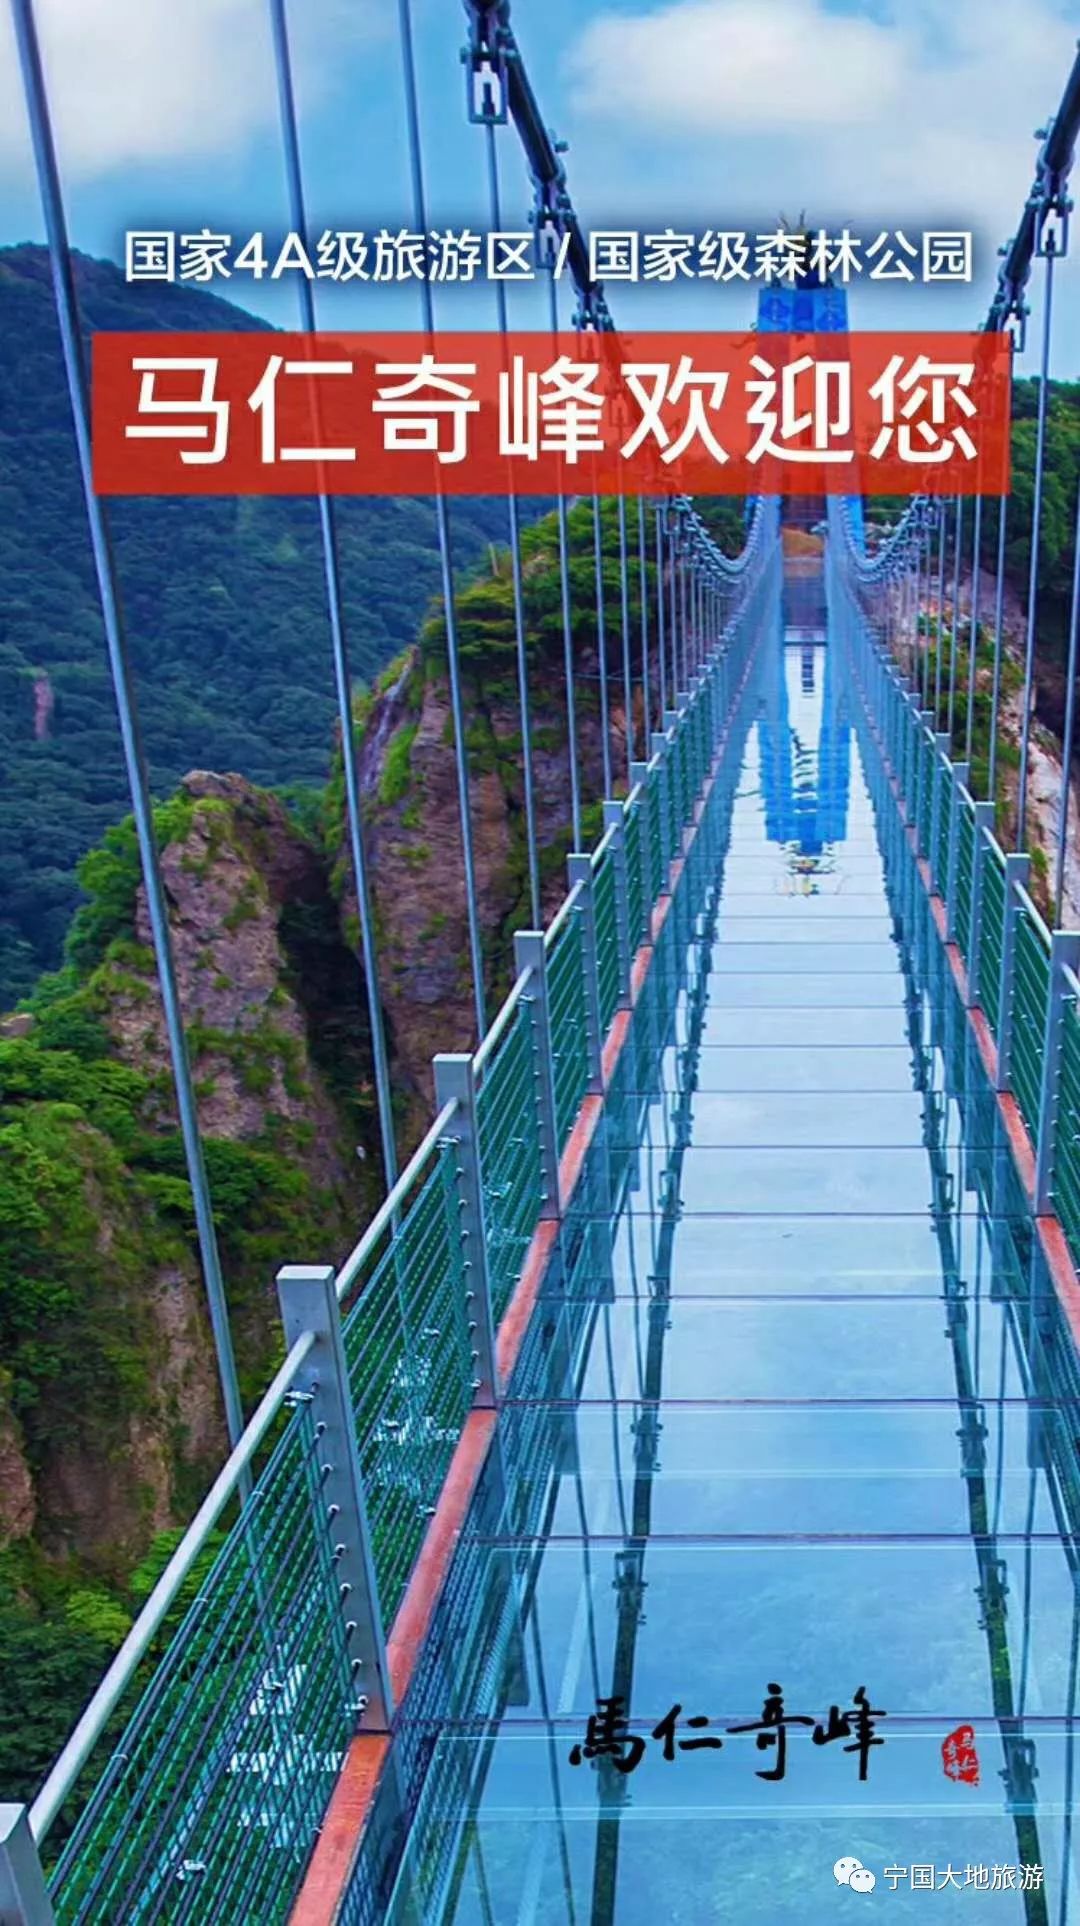 12.23飞龙在天玻璃桥首度面世,芜湖繁昌马仁奇峰,玻璃栈道一日游